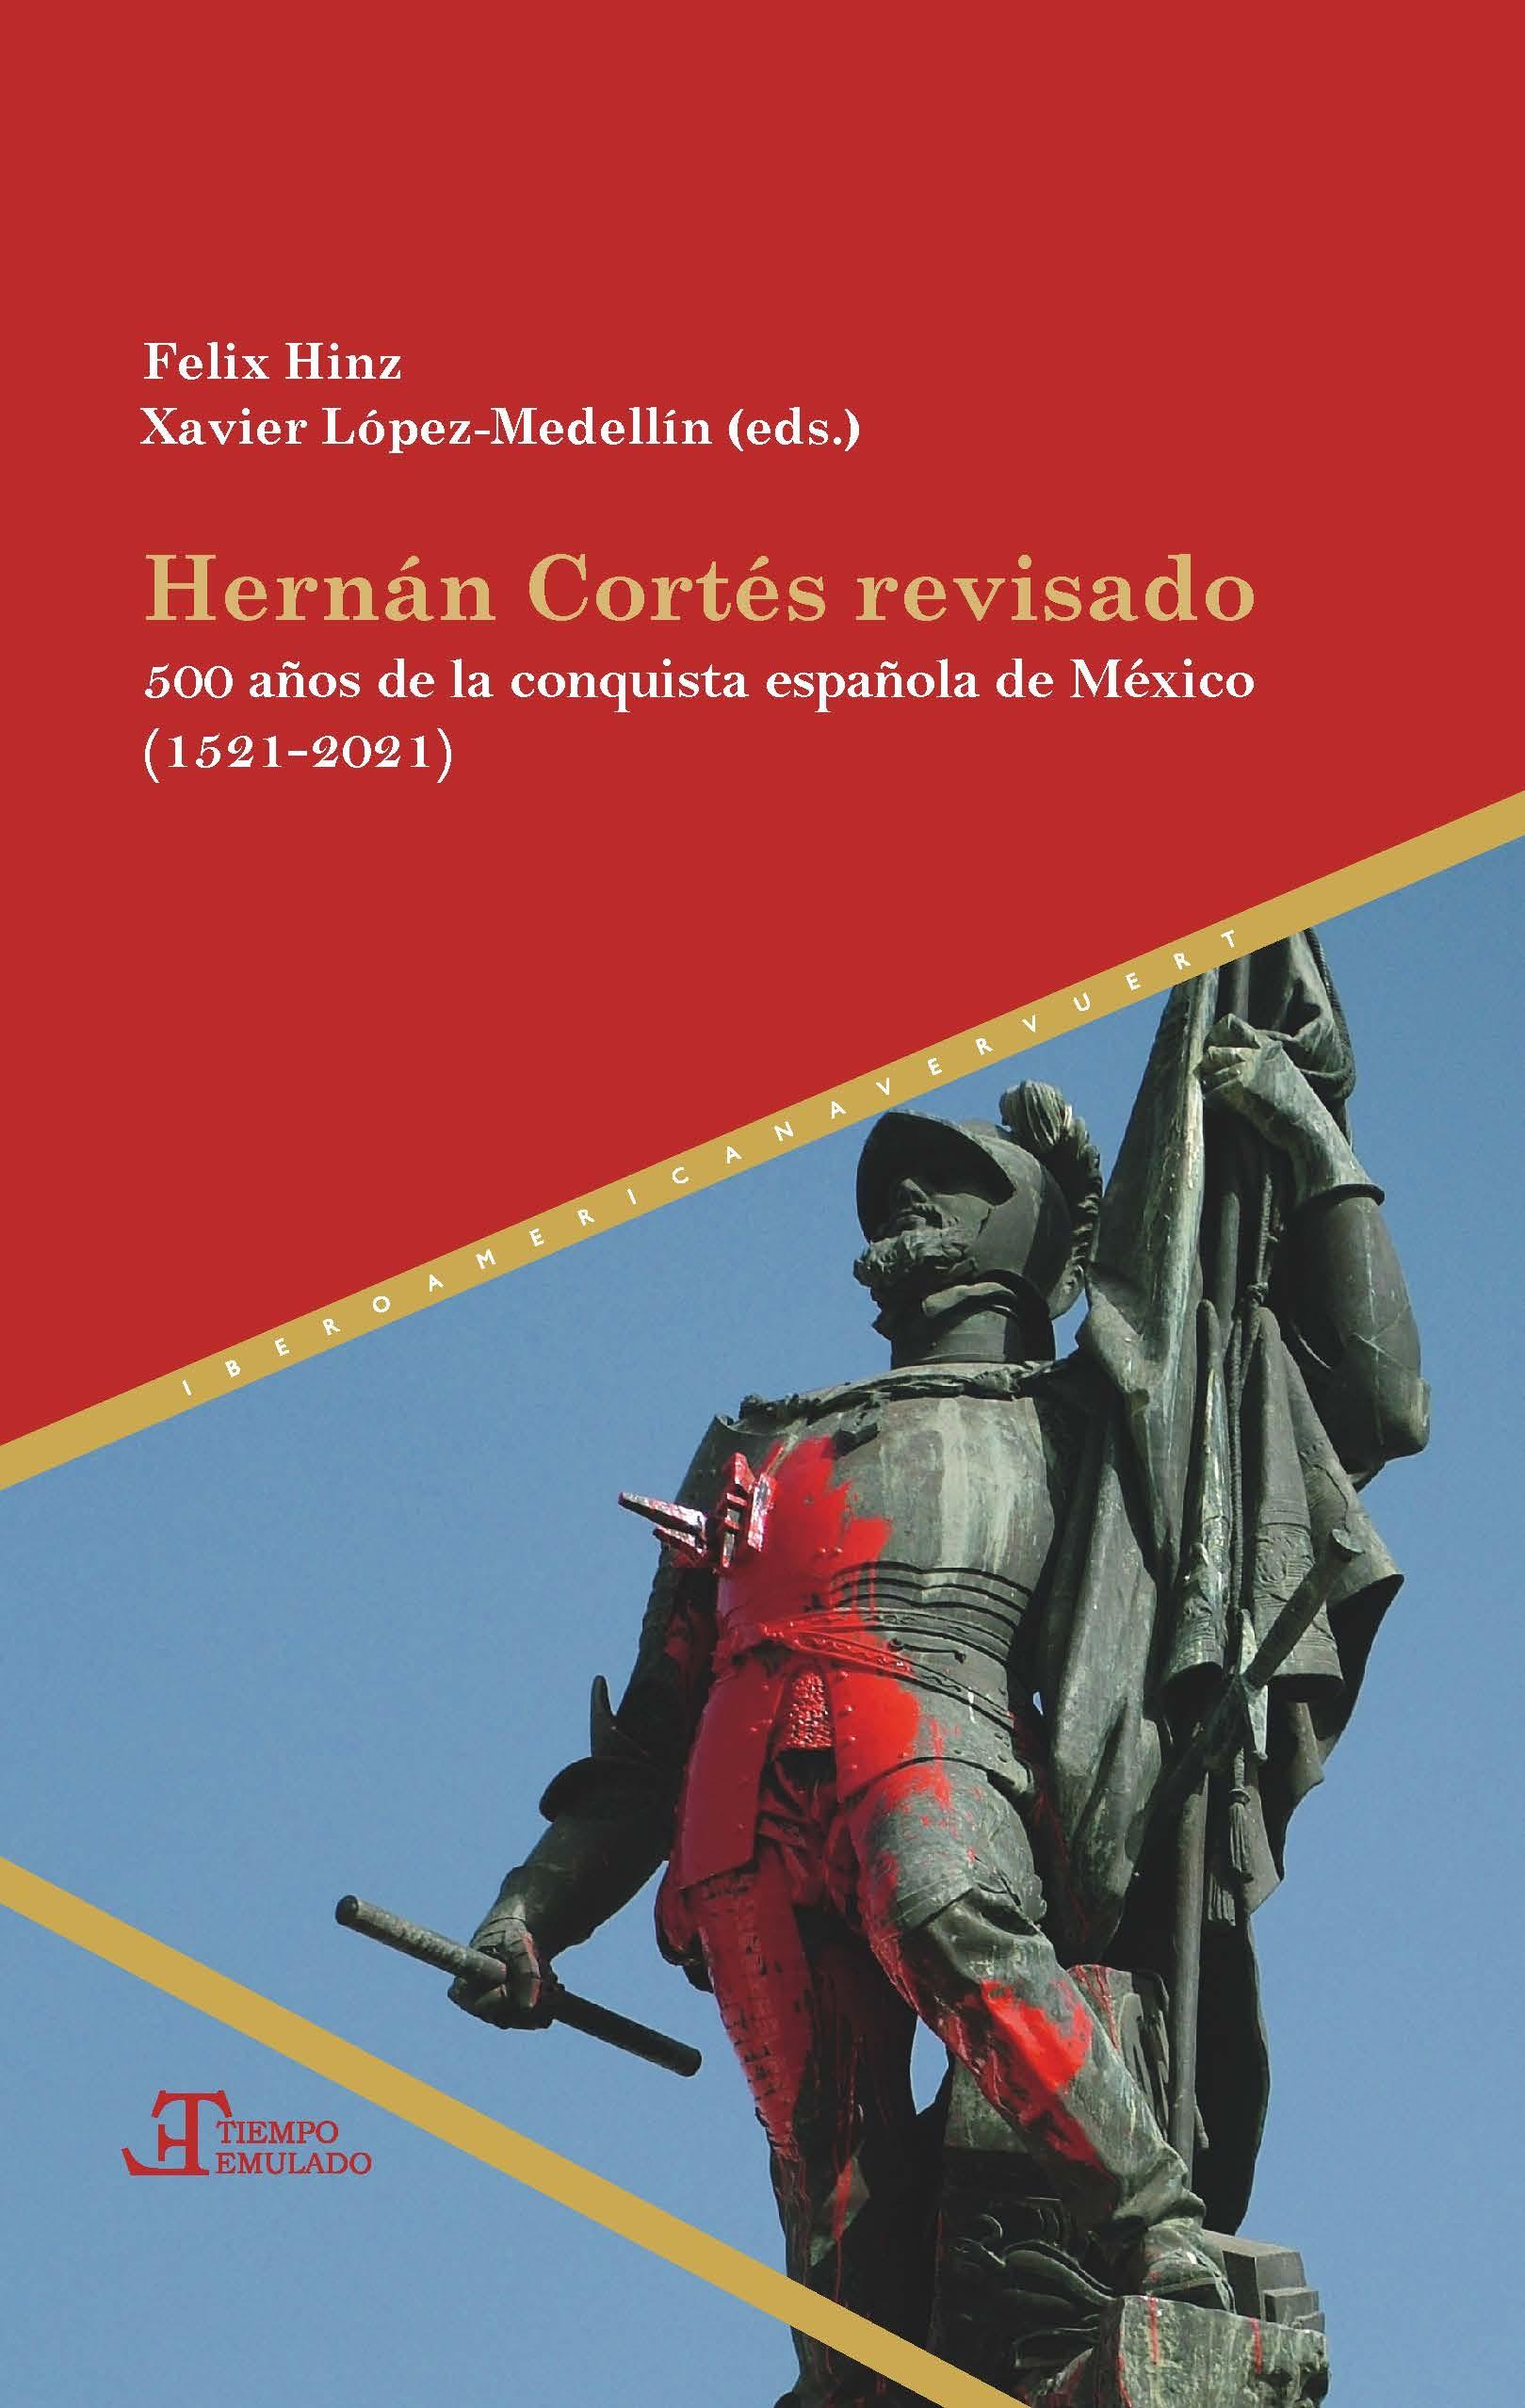 Hernán Cortés revisado "500 años de la conquista española de México (1521-2021)"